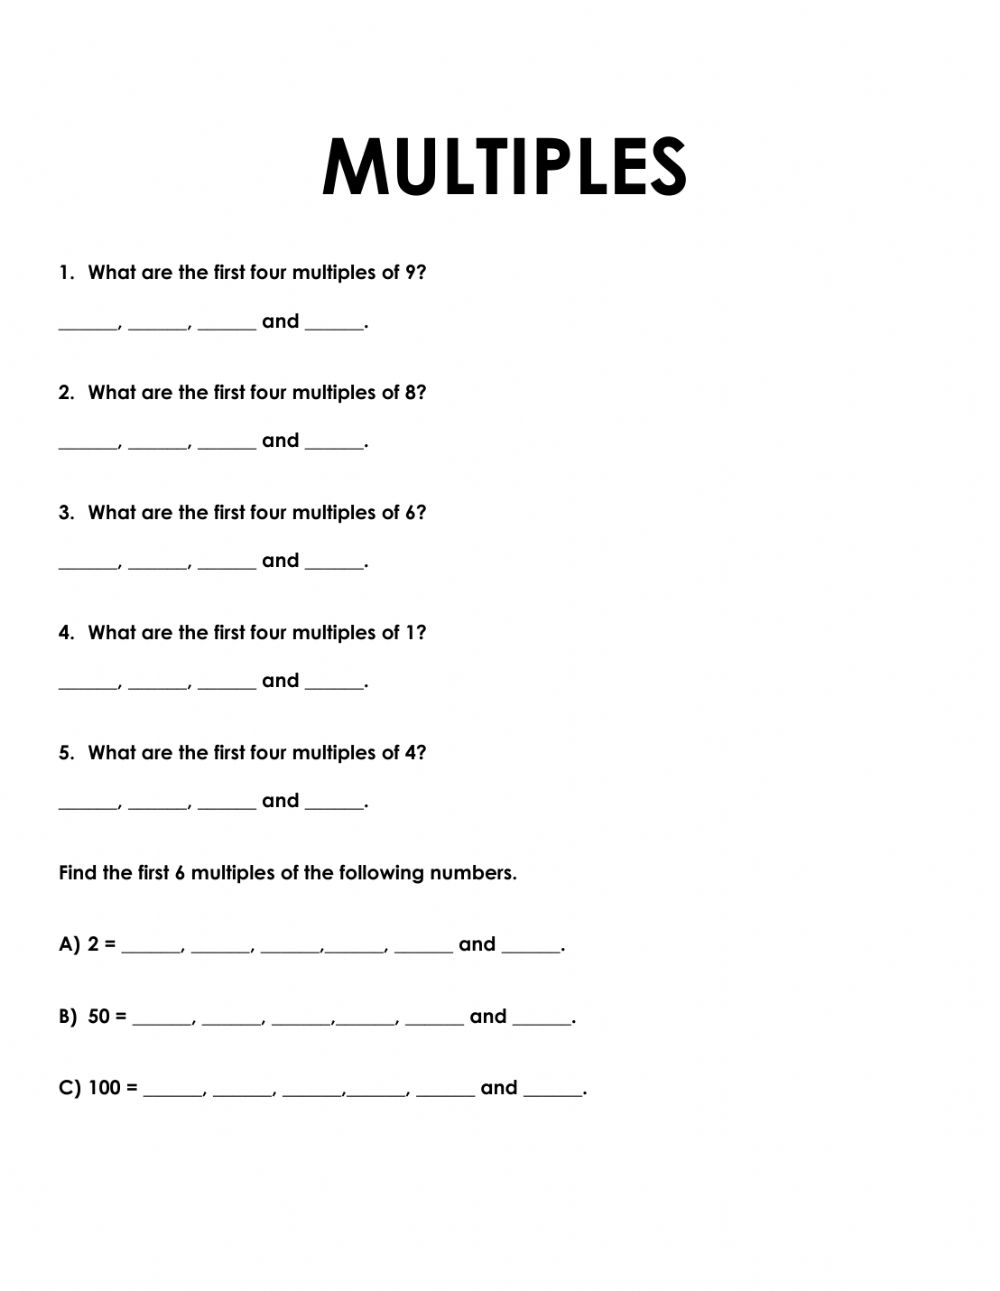 multiples-of-6-worksheets-printable-worksheets